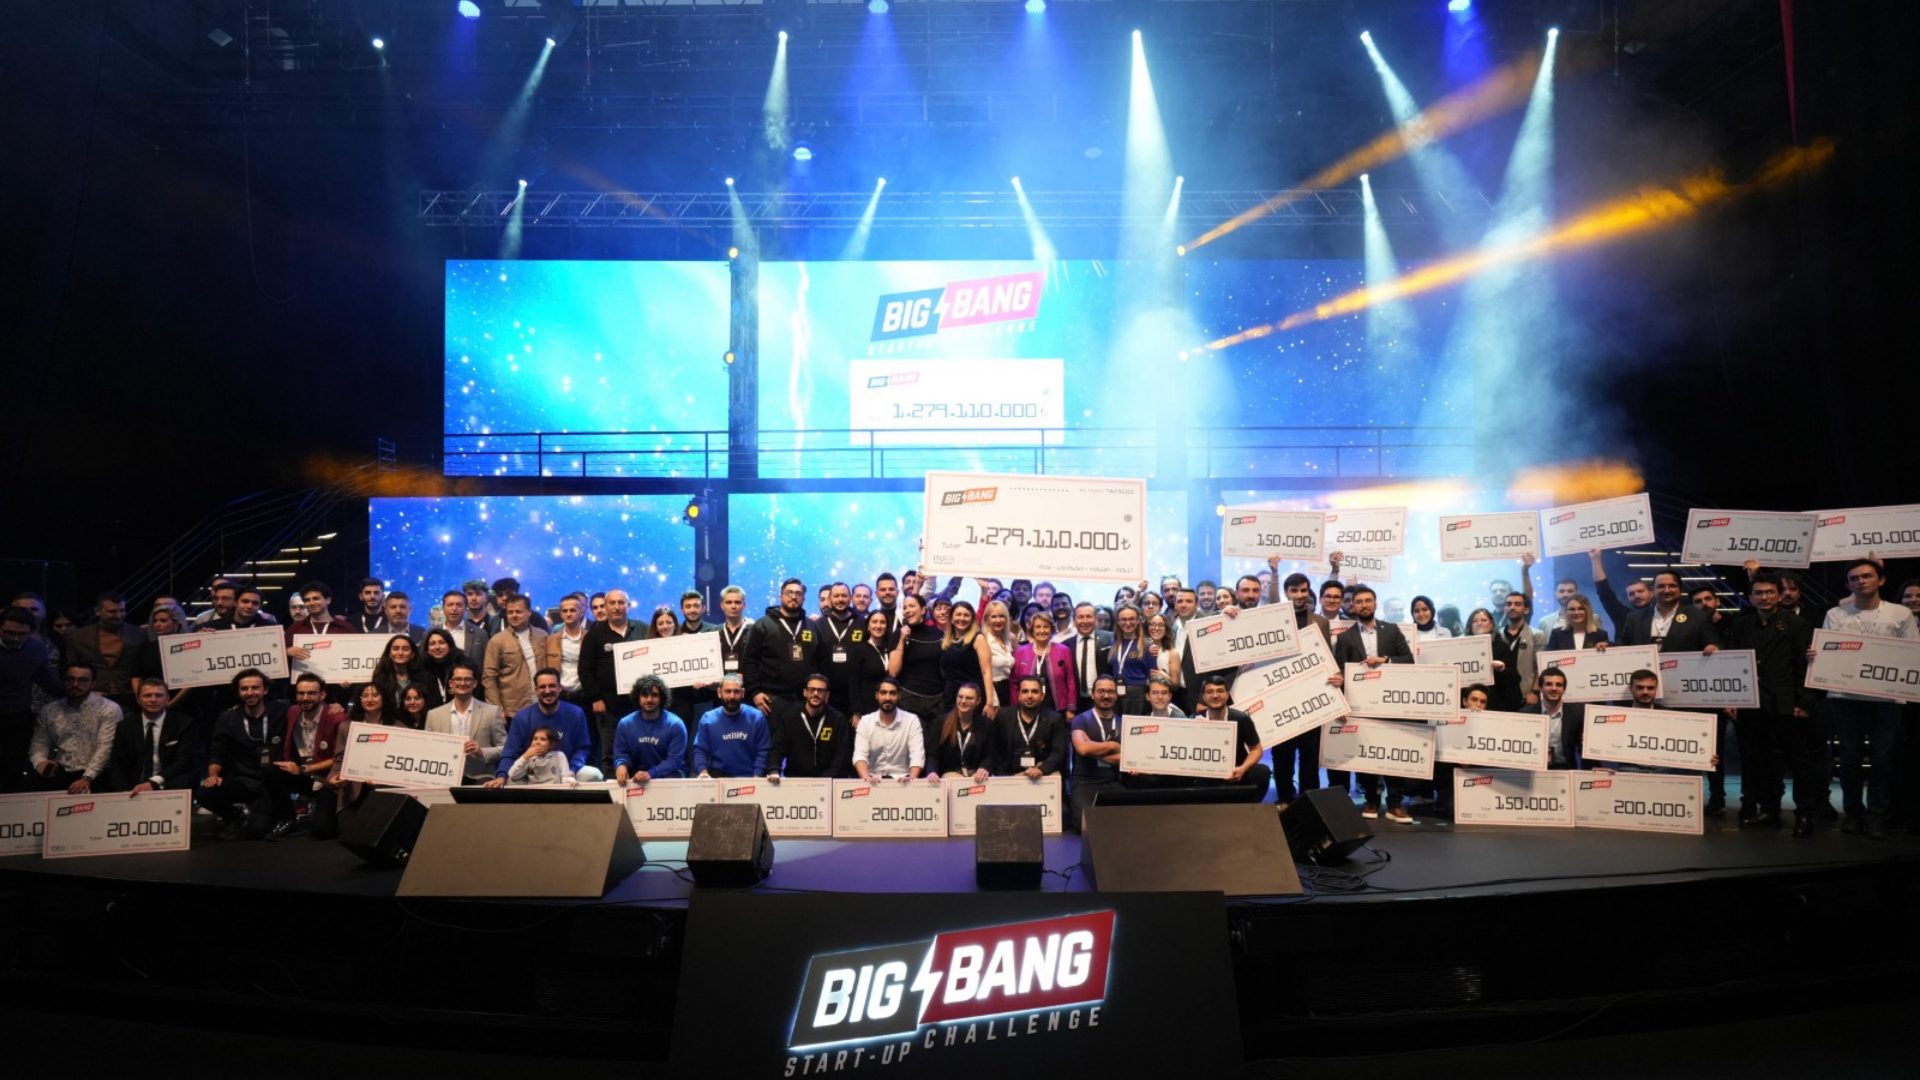 big bang startup challenge 2023 girişimcilere sağladığı ödül, nakit ve yatırımla çıtayı 1,28 milyar tl’ye çıkardı 4